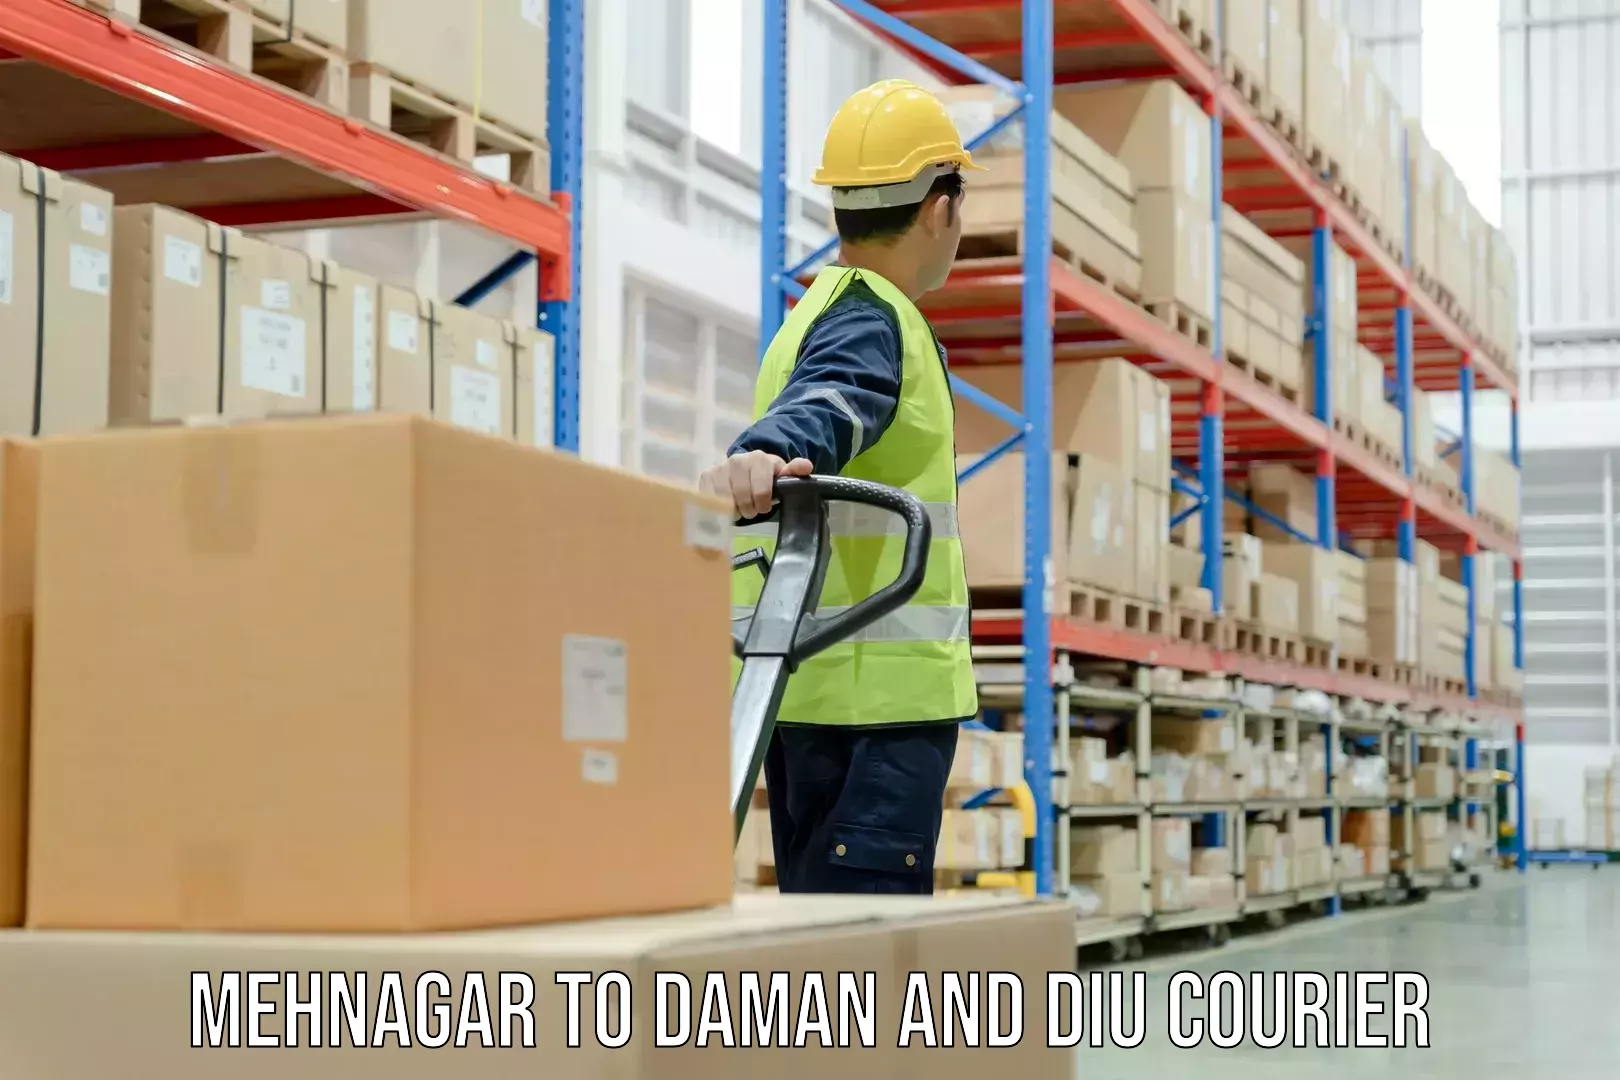 Cargo courier service Mehnagar to Daman and Diu